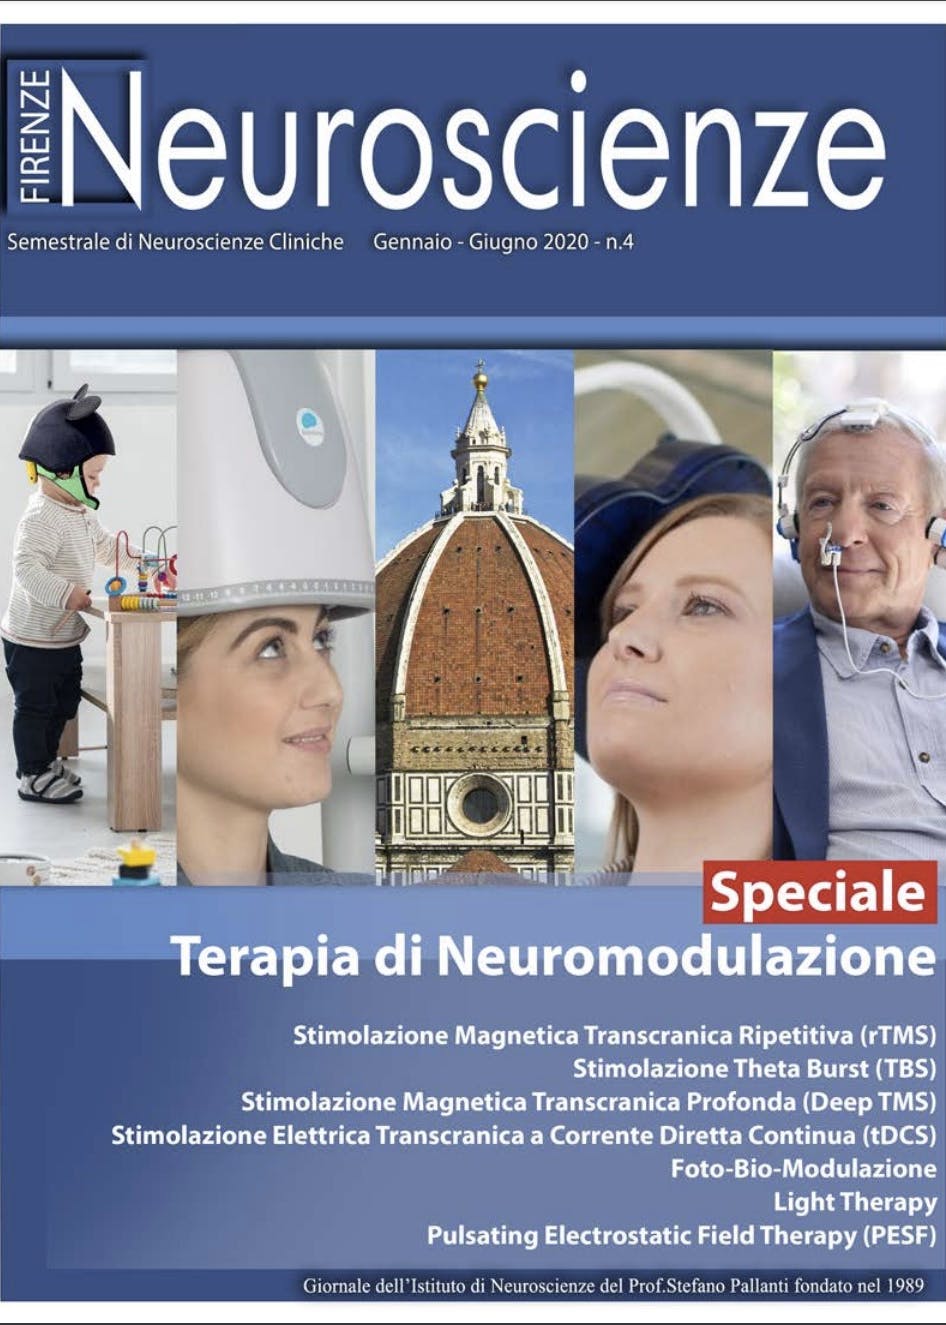 Cover of the fourth issue of the journal "Firenze Neuroscienze": Speciale Terapia di Neuromodulazione - Stimolazione magnetica transcranica ripetitiva (rTMS), Stimolazione Theta Burst (TBS), Stimolazione Magnetica Transcranica Profonda (Deep TMS), Stimolazione Elettrica Transcranica a Corrente Diretta Continua (tDCS), Foto-Bio-Modulazione, Light Therapy, Pulsating Electrostatic Field Therapy (PEFS).